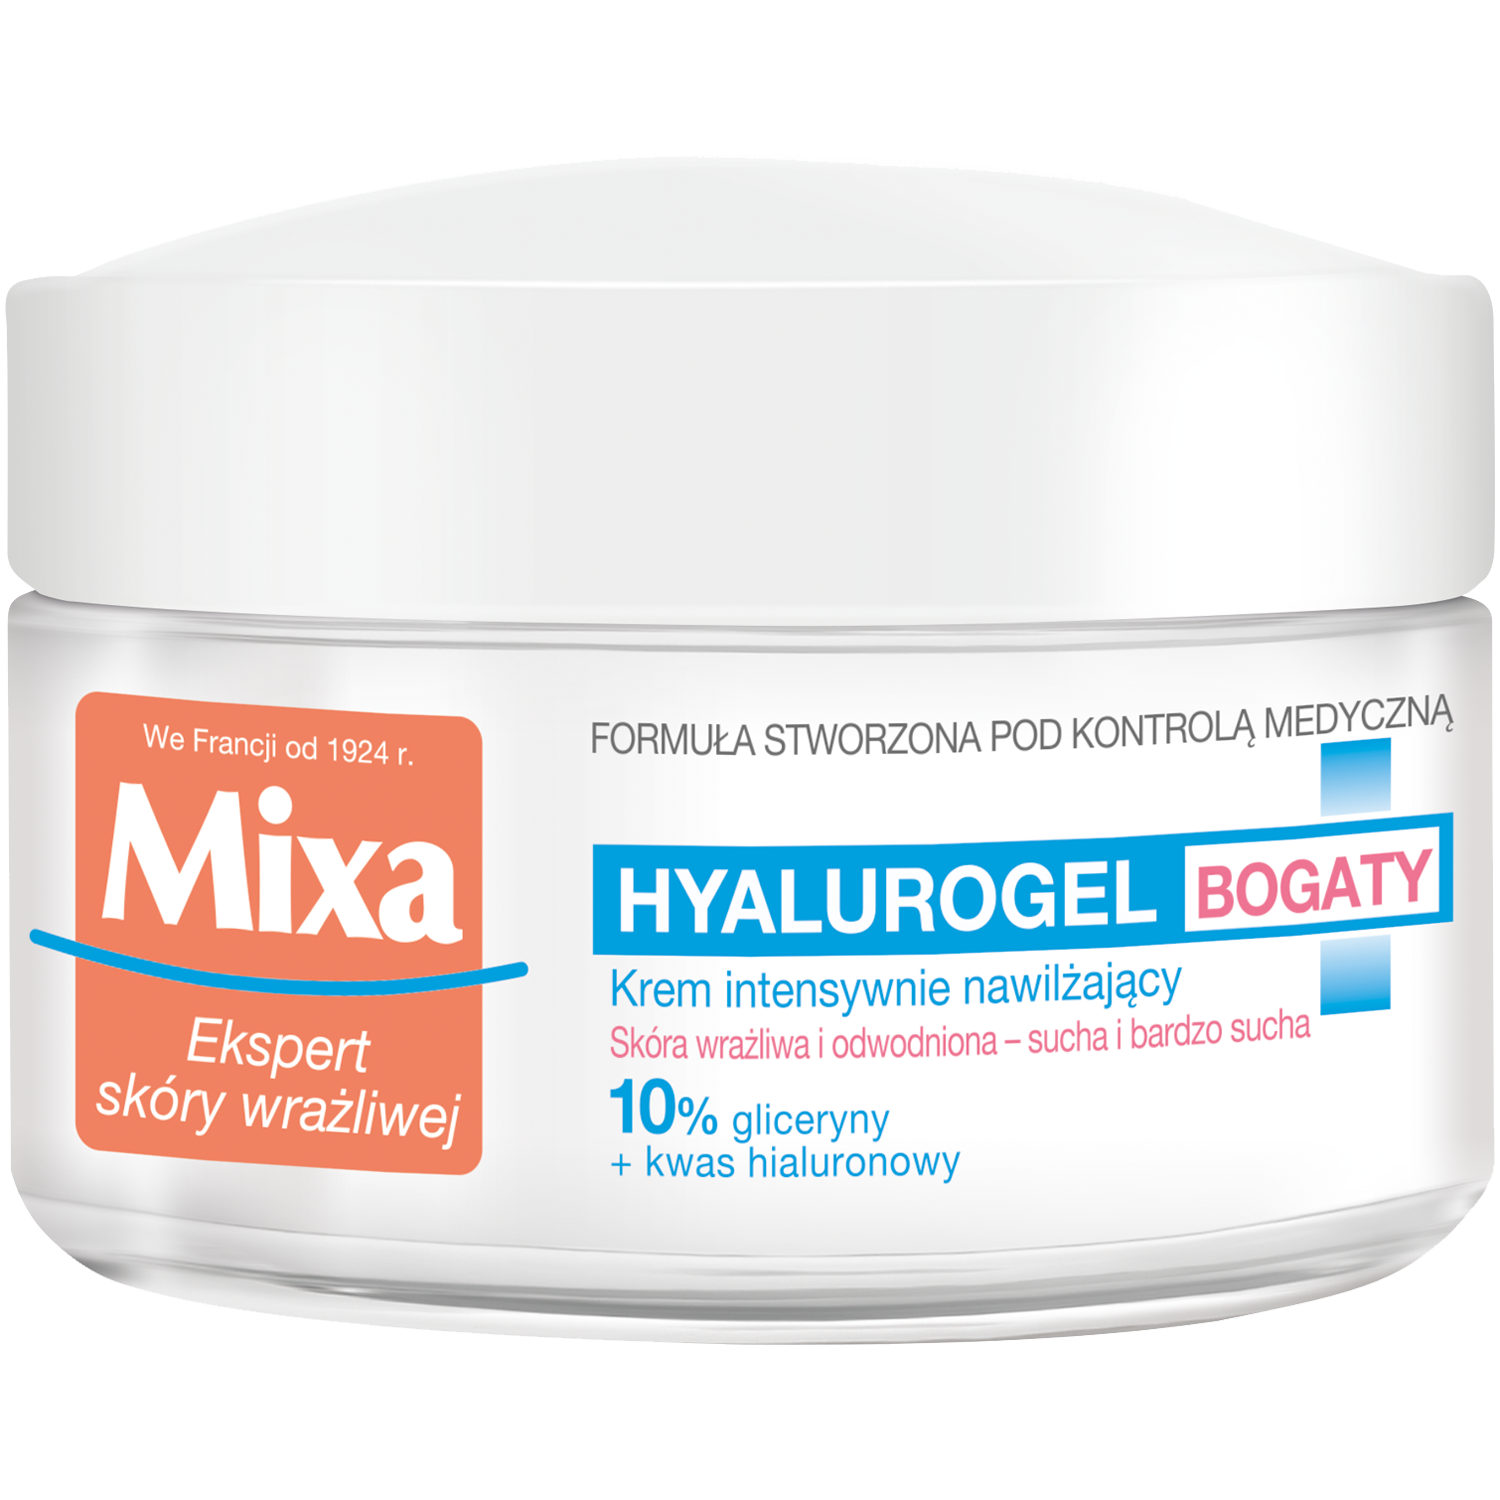 Mixa Hyalurogel Интенсивно увлажняющий крем для лица для чувствительной, сухой и очень сухой кожи, 50 мл